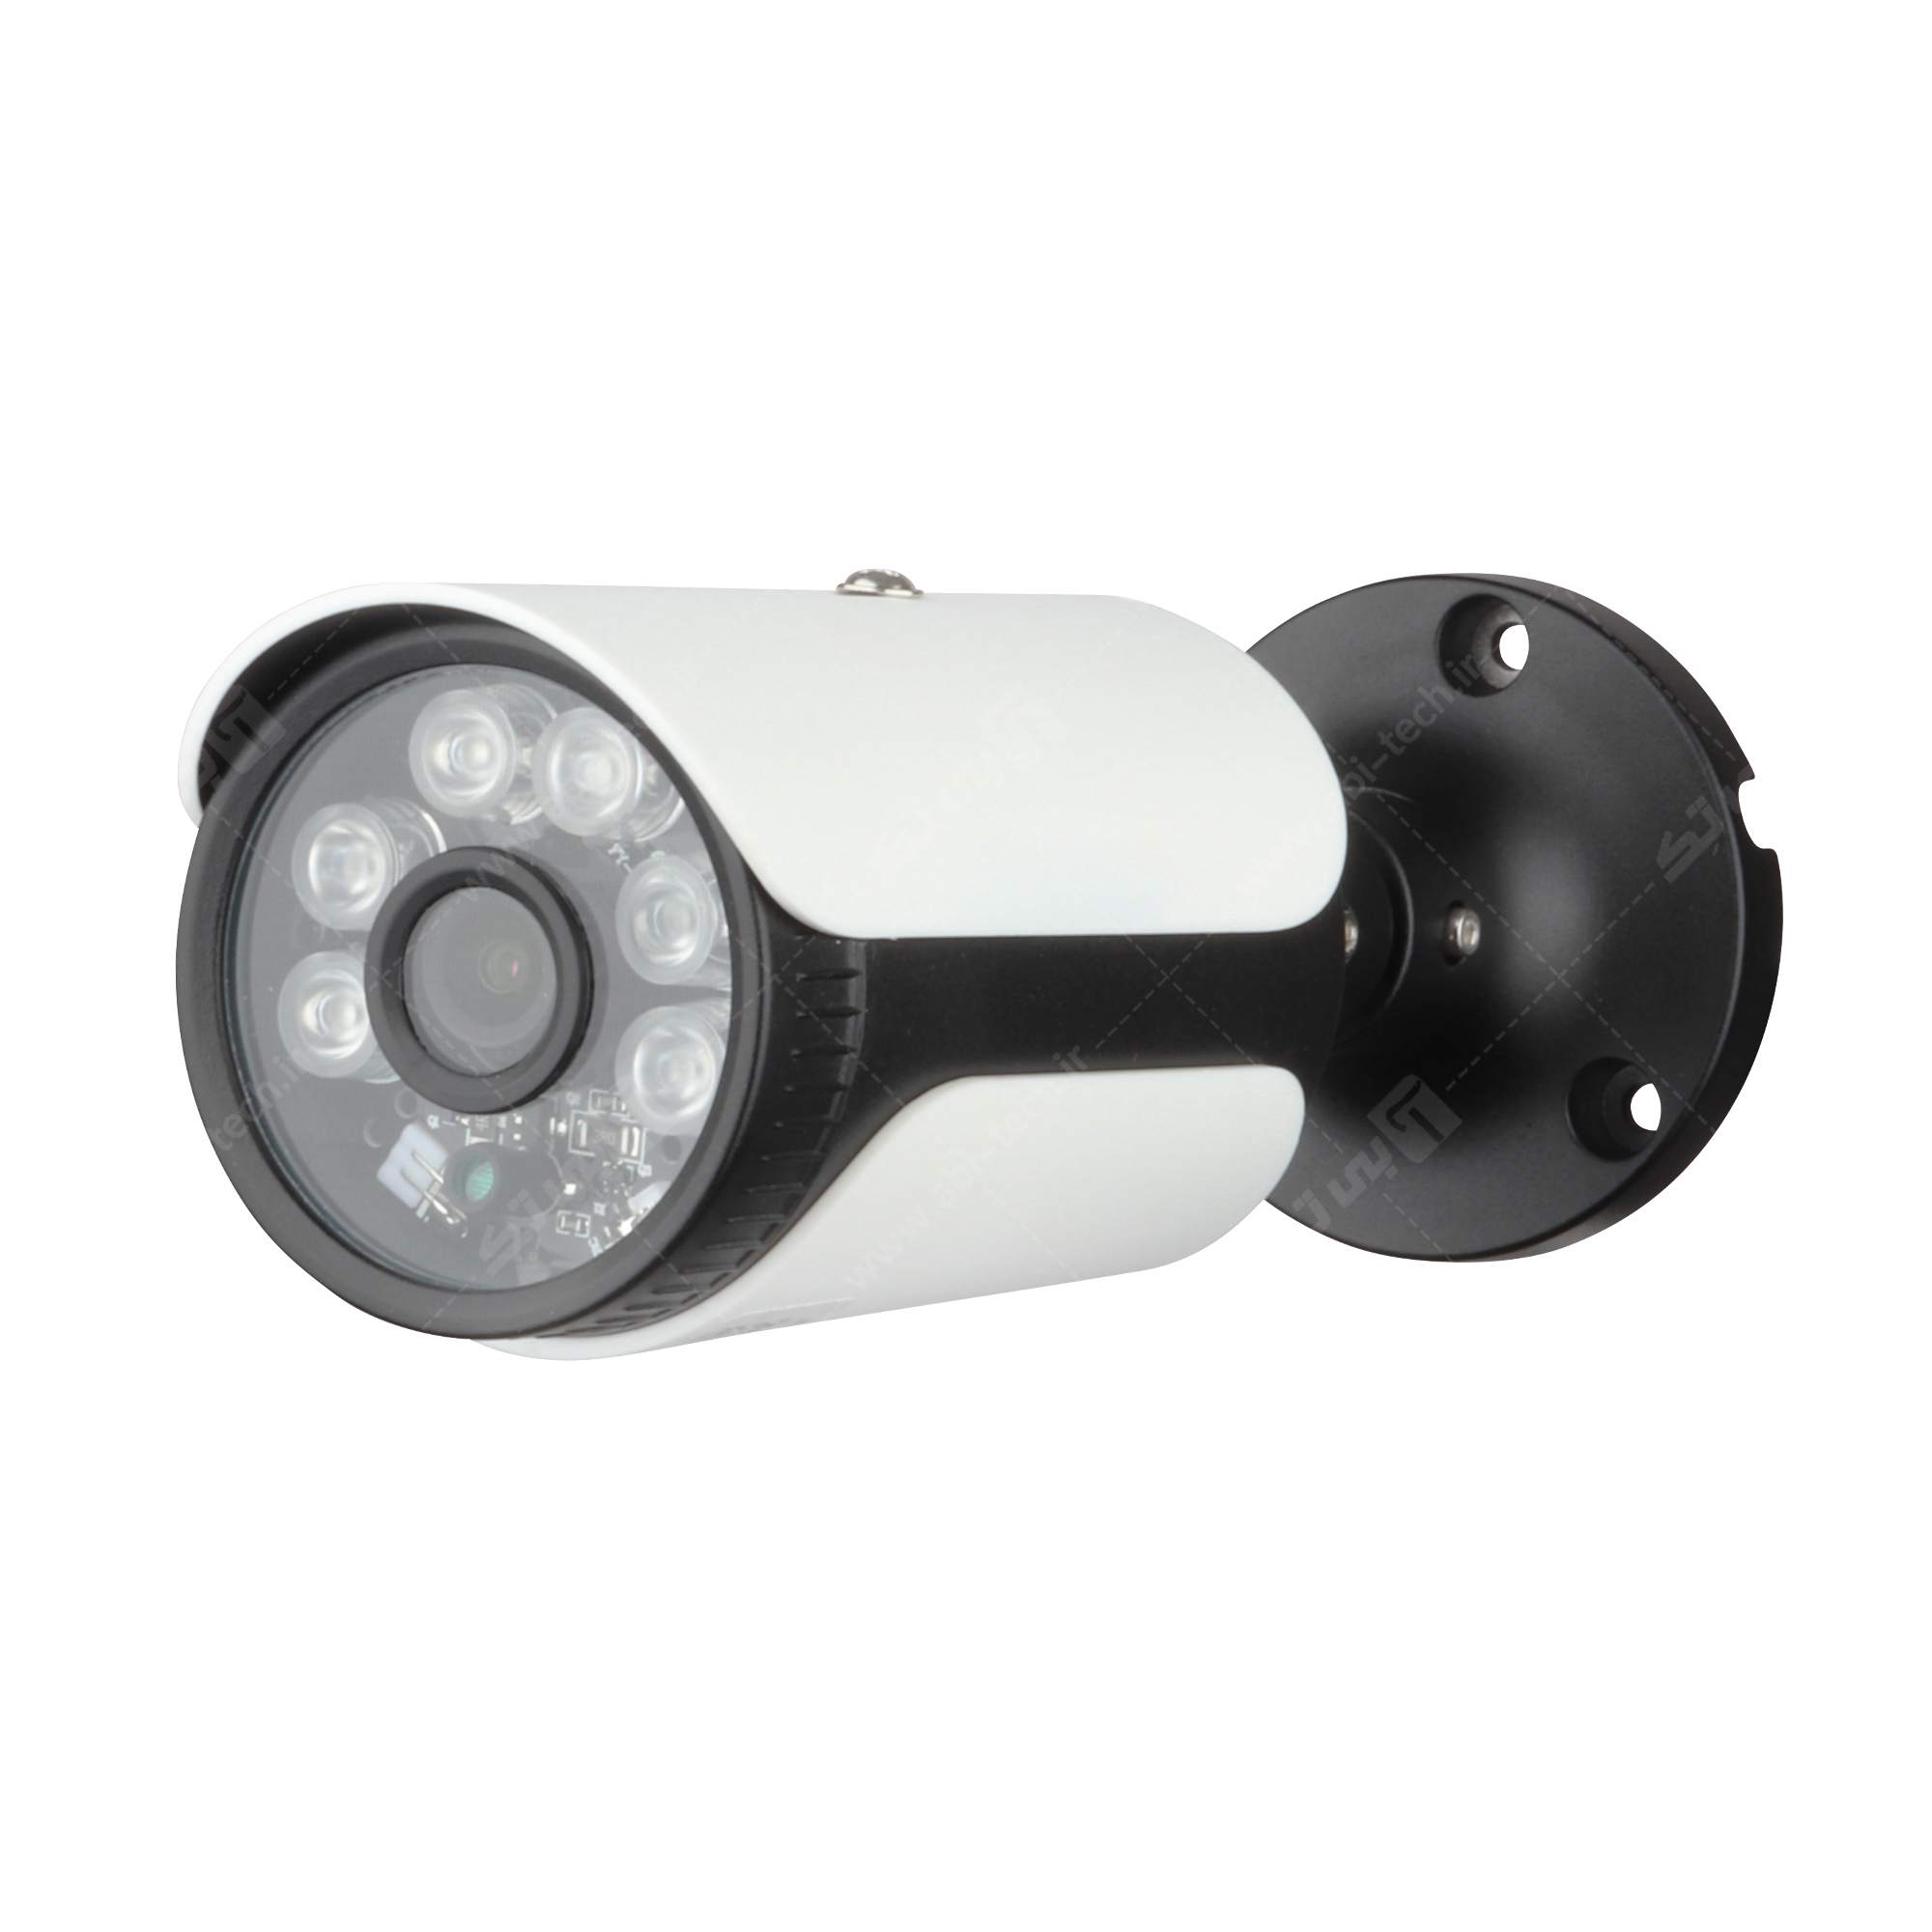 دوربین مداربسته بولت 2 مگاپیکسل کیس پلاستیکی دید در شب رنگی B3r - ایمن فروش (شرکت آرشانوین)